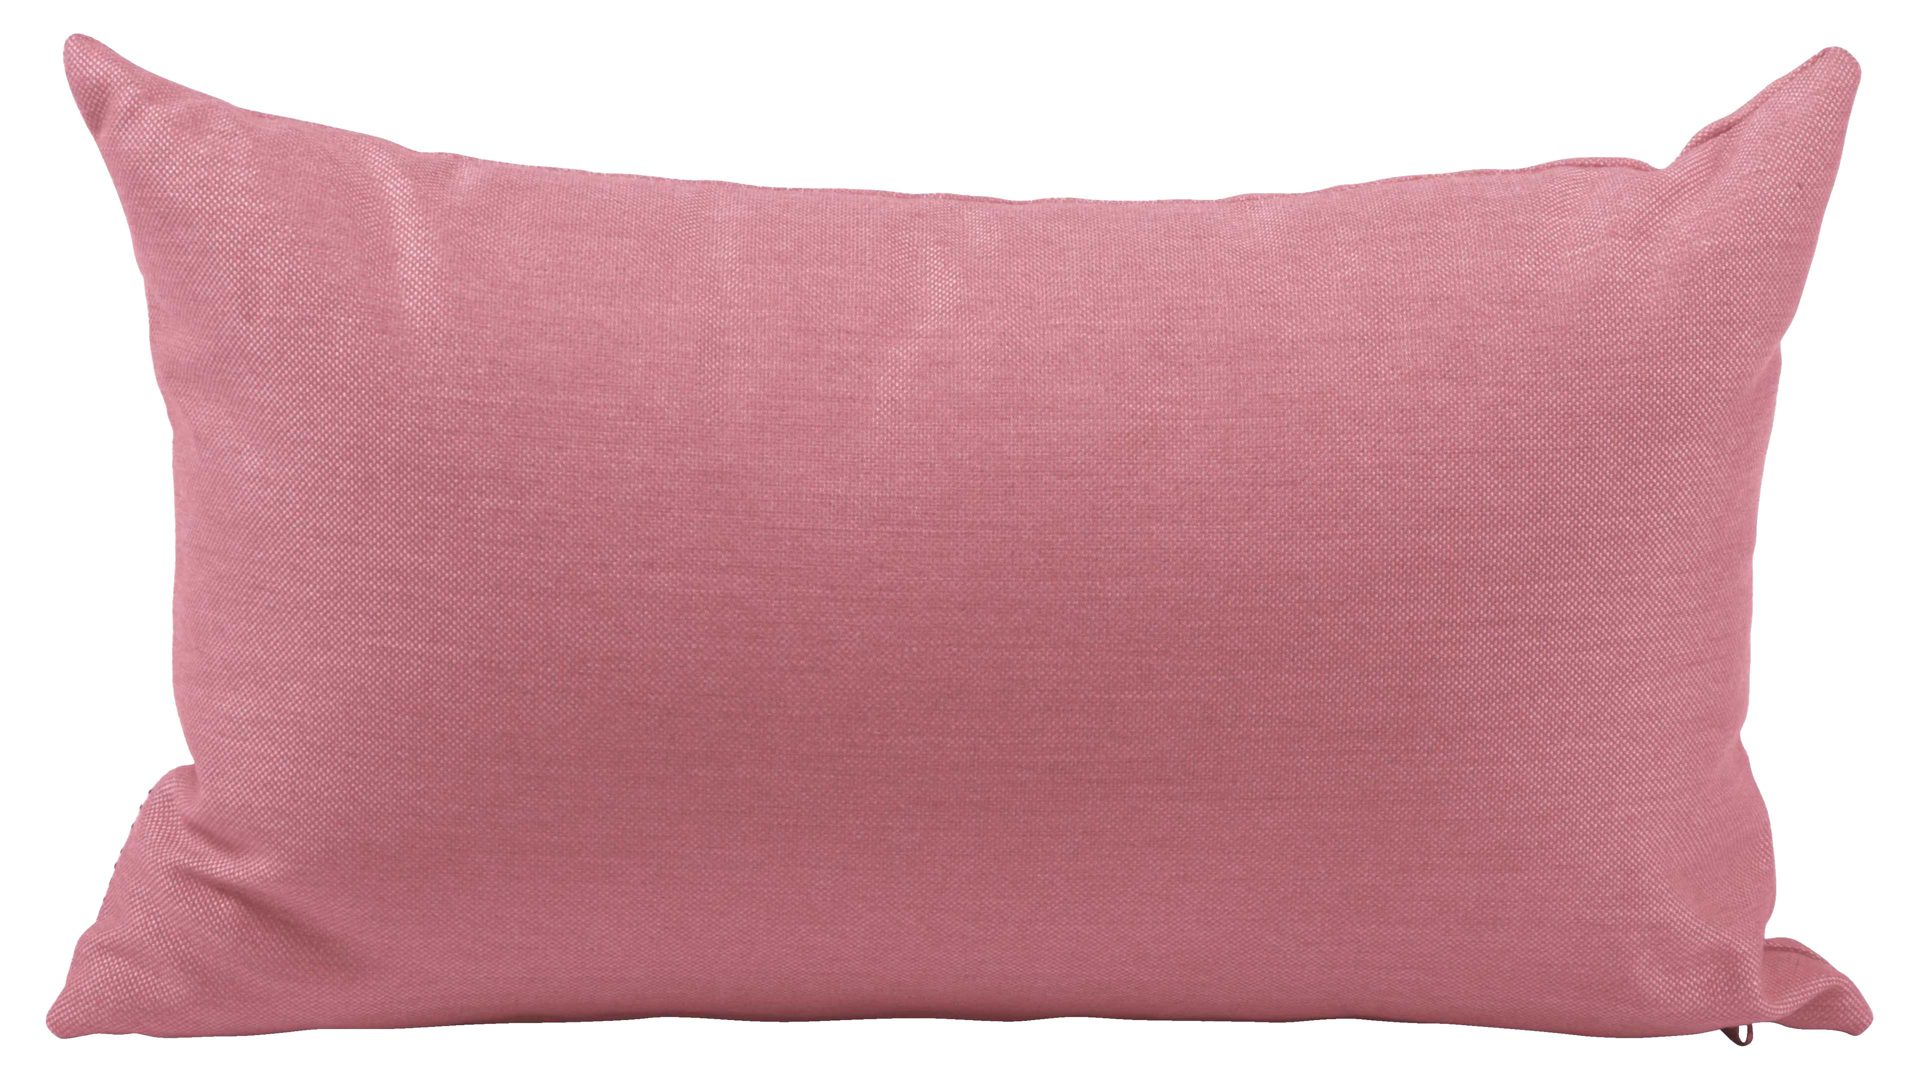 Einzelkissen Stern® aus Kunstfaser in Pink STERN® Gartentextilen Serie pinker Outdoorbezug - ca. 55 x 35 cm